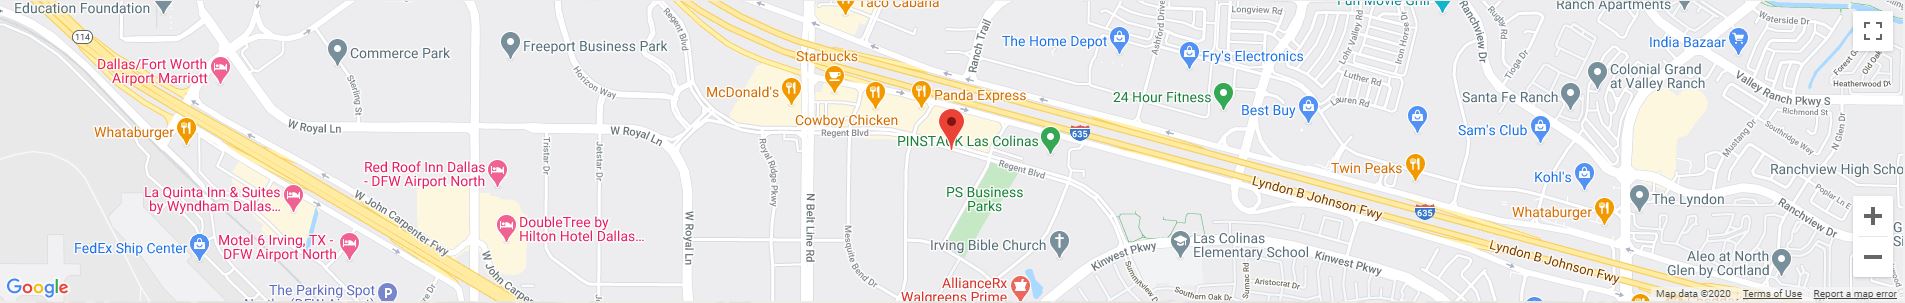 Las Colinas, TX Google Maps Desktop